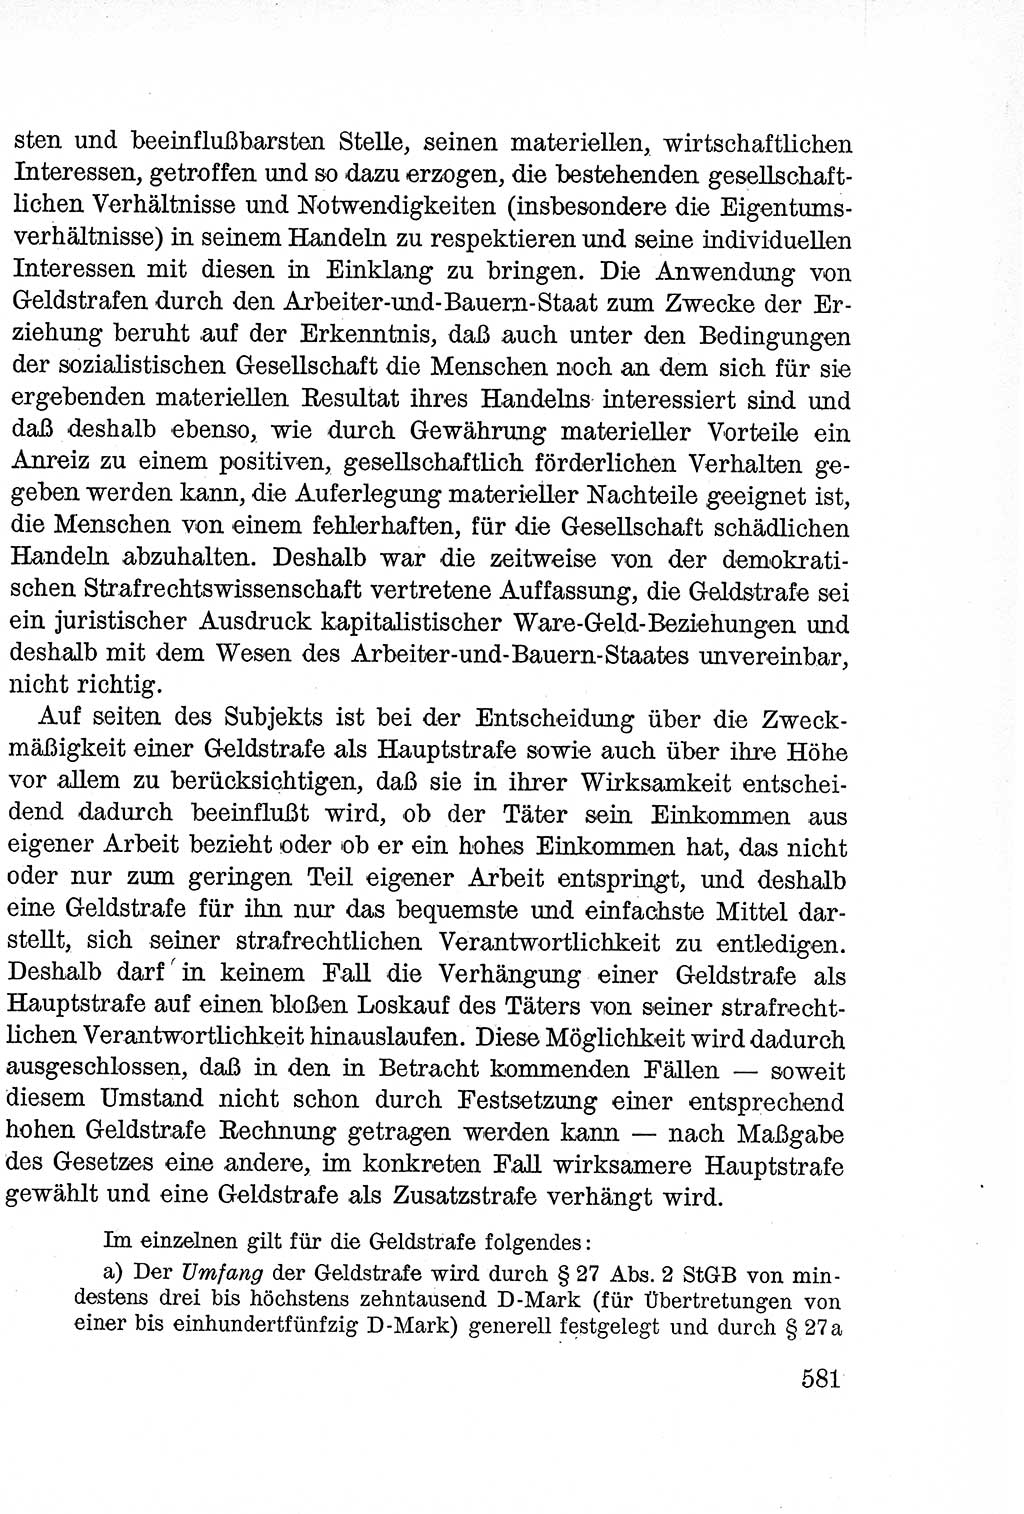 Lehrbuch des Strafrechts der Deutschen Demokratischen Republik (DDR), Allgemeiner Teil 1957, Seite 581 (Lb. Strafr. DDR AT 1957, S. 581)